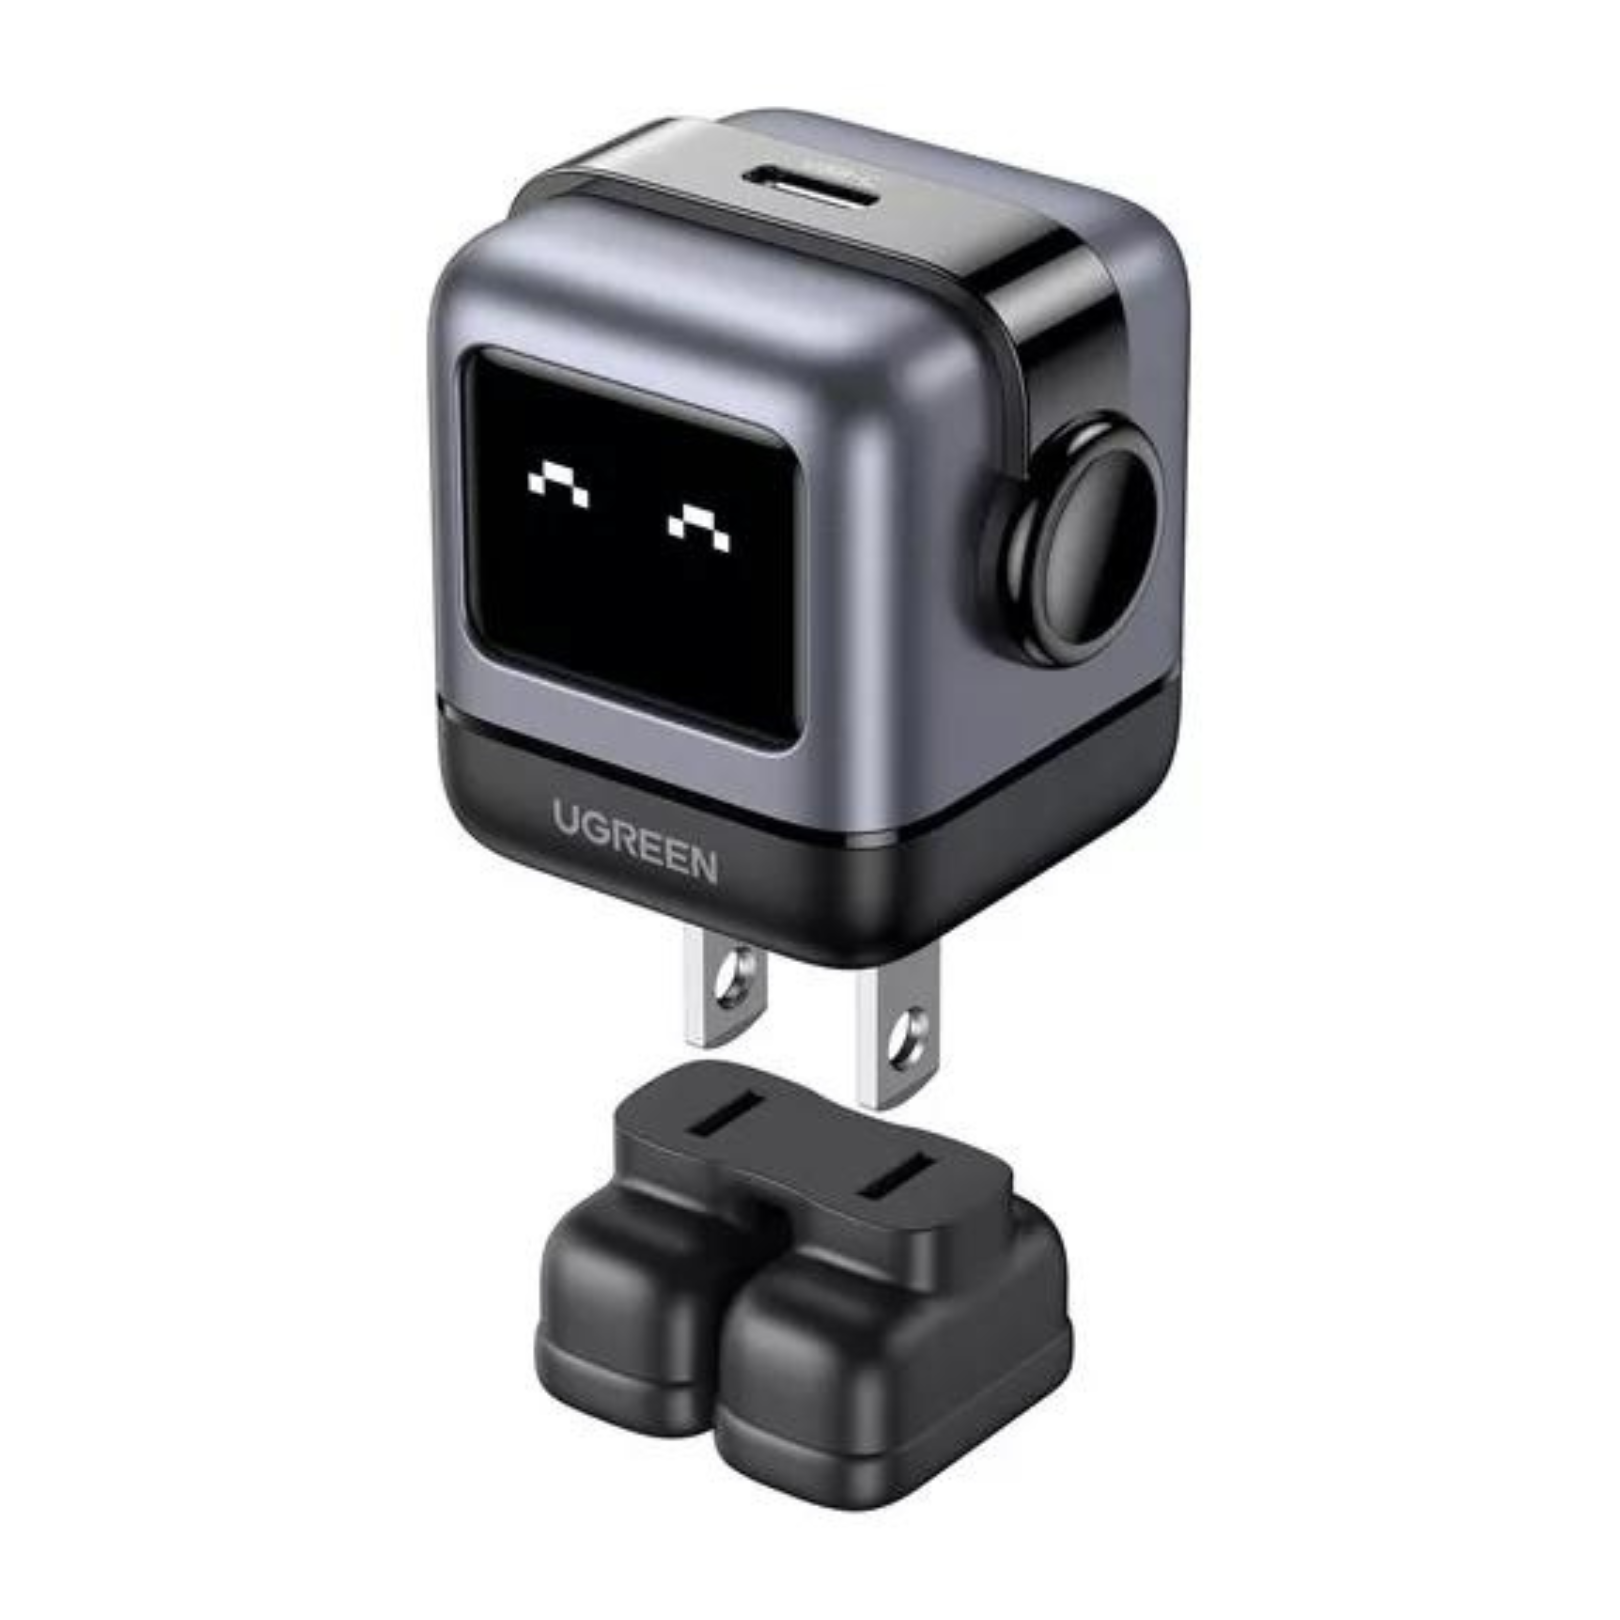 Cargador Ugreen 30W USB-C Carga Rápida, Robot con Pantalla, Negro (15550)